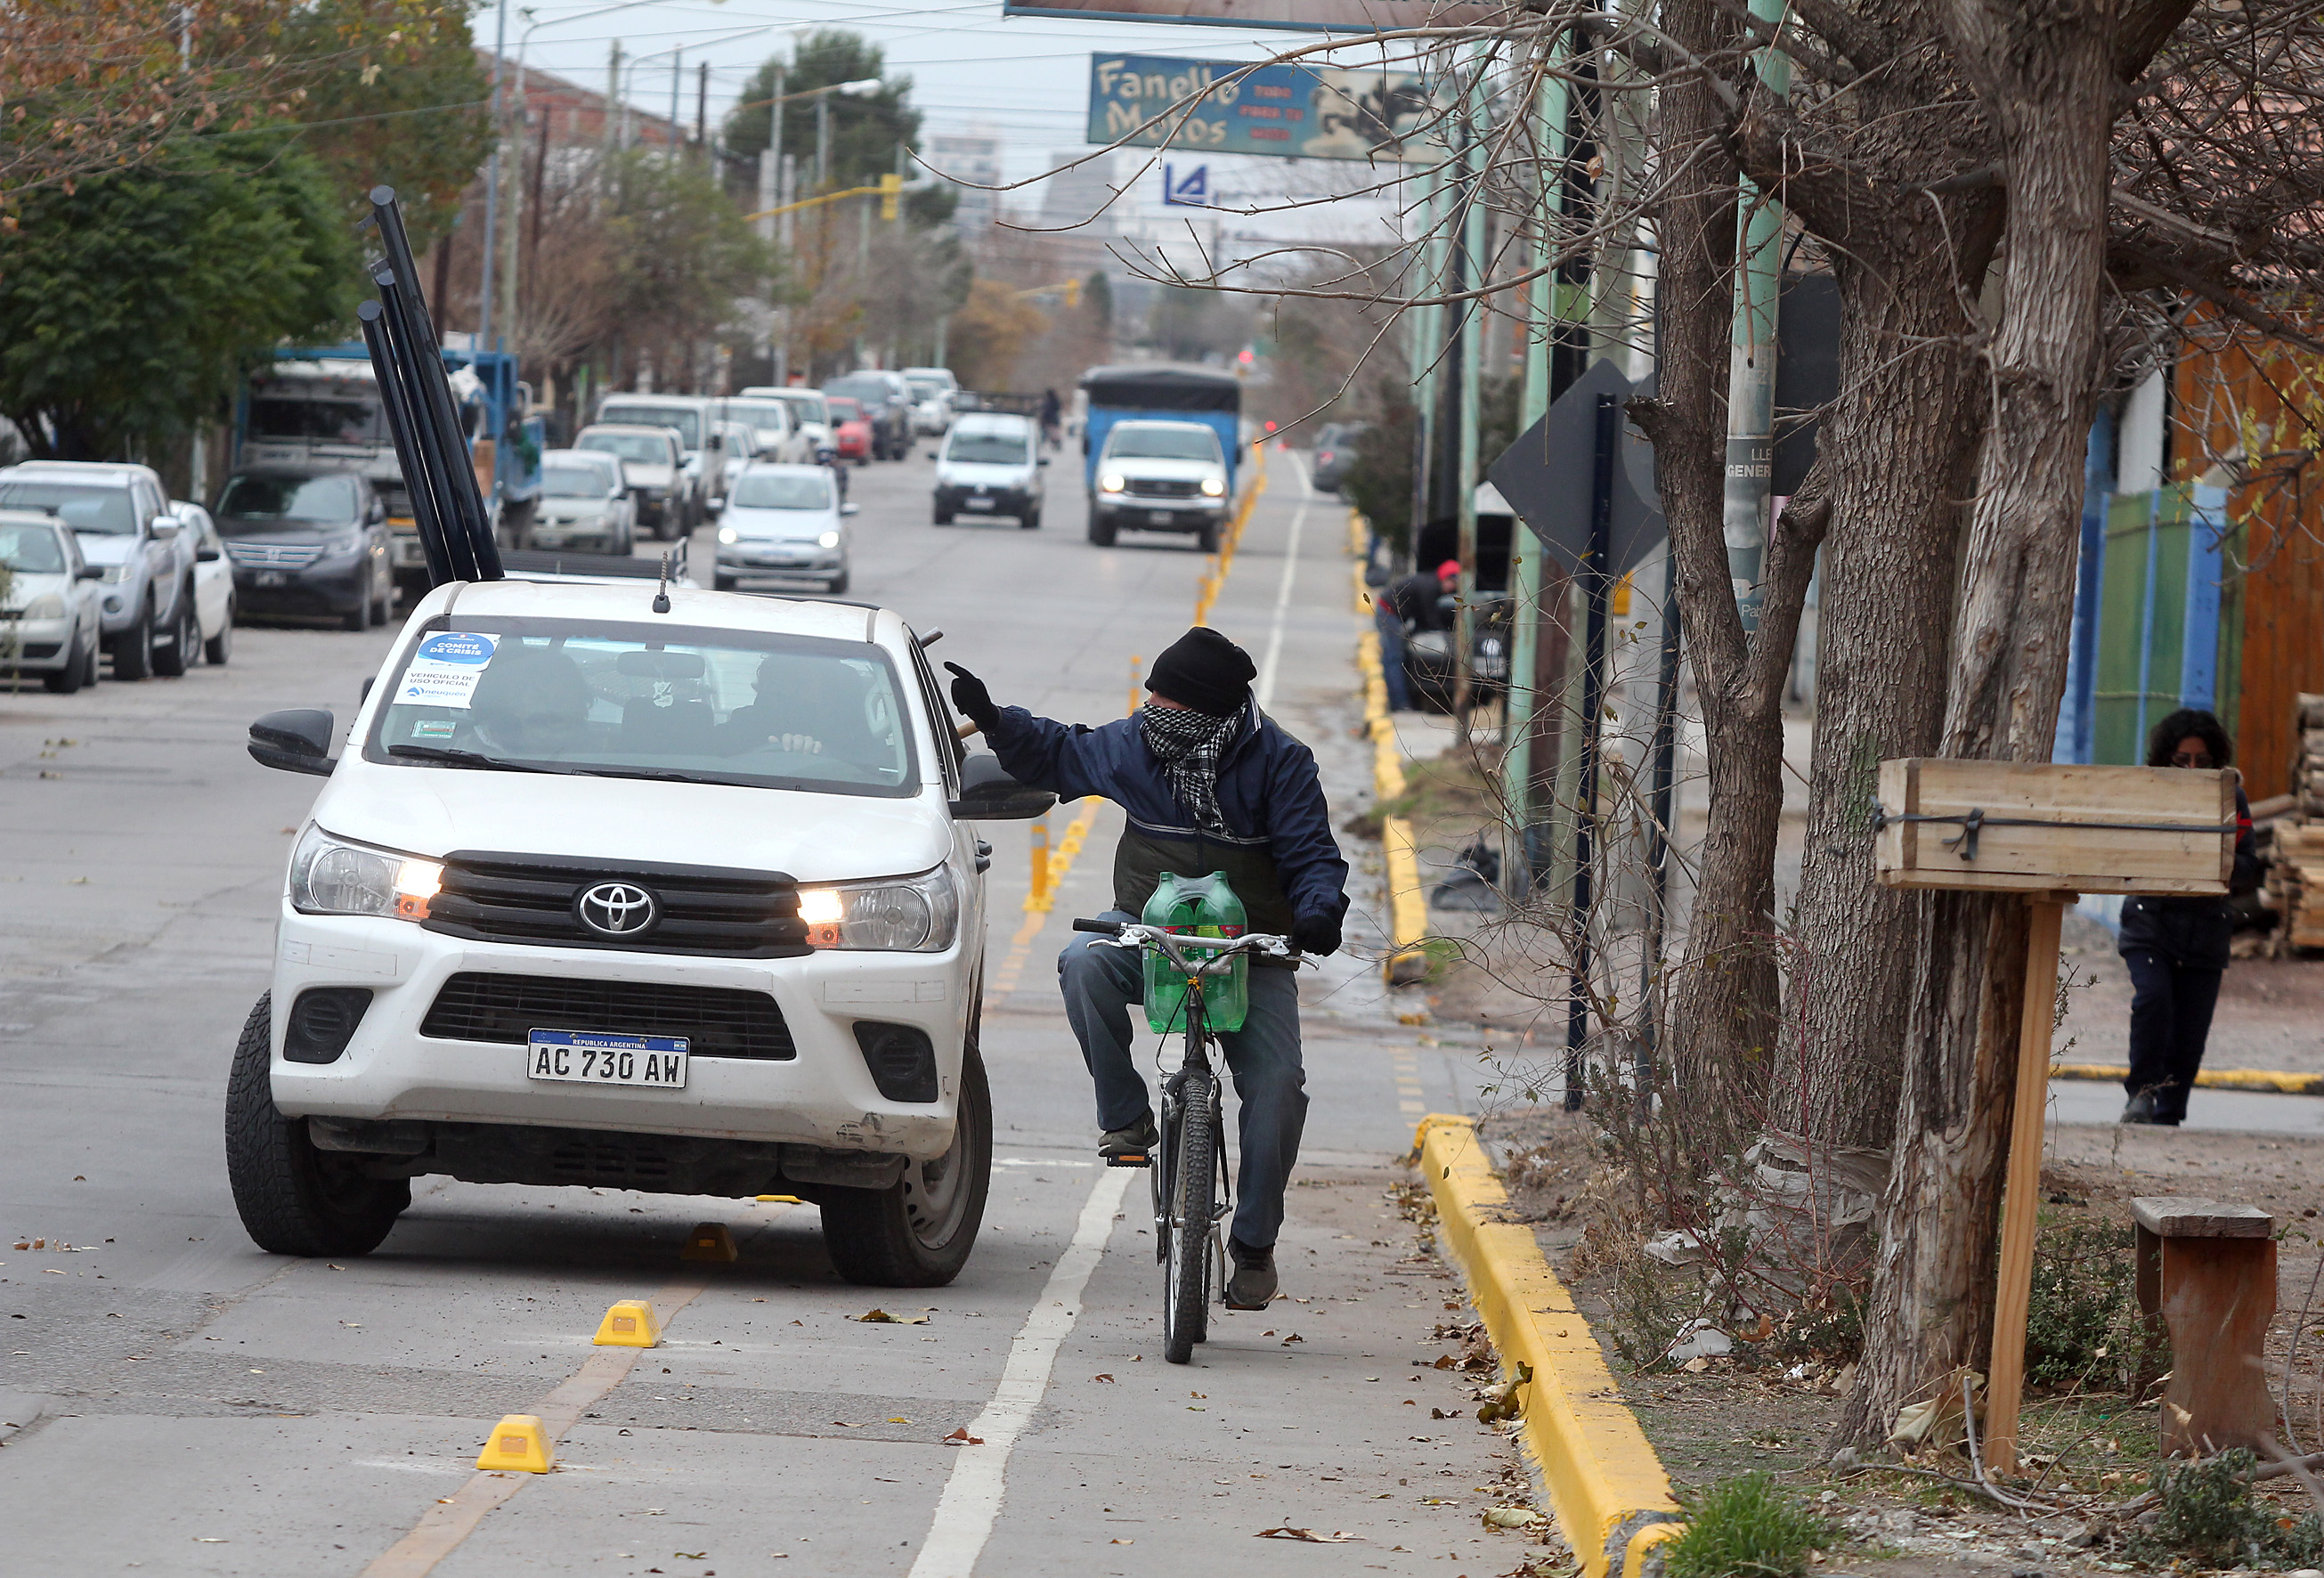 Señalizan las bicicalles para evitar estacionamientos e invasiones del carril exclusivo para bicicletas (foto Oscar Livera)